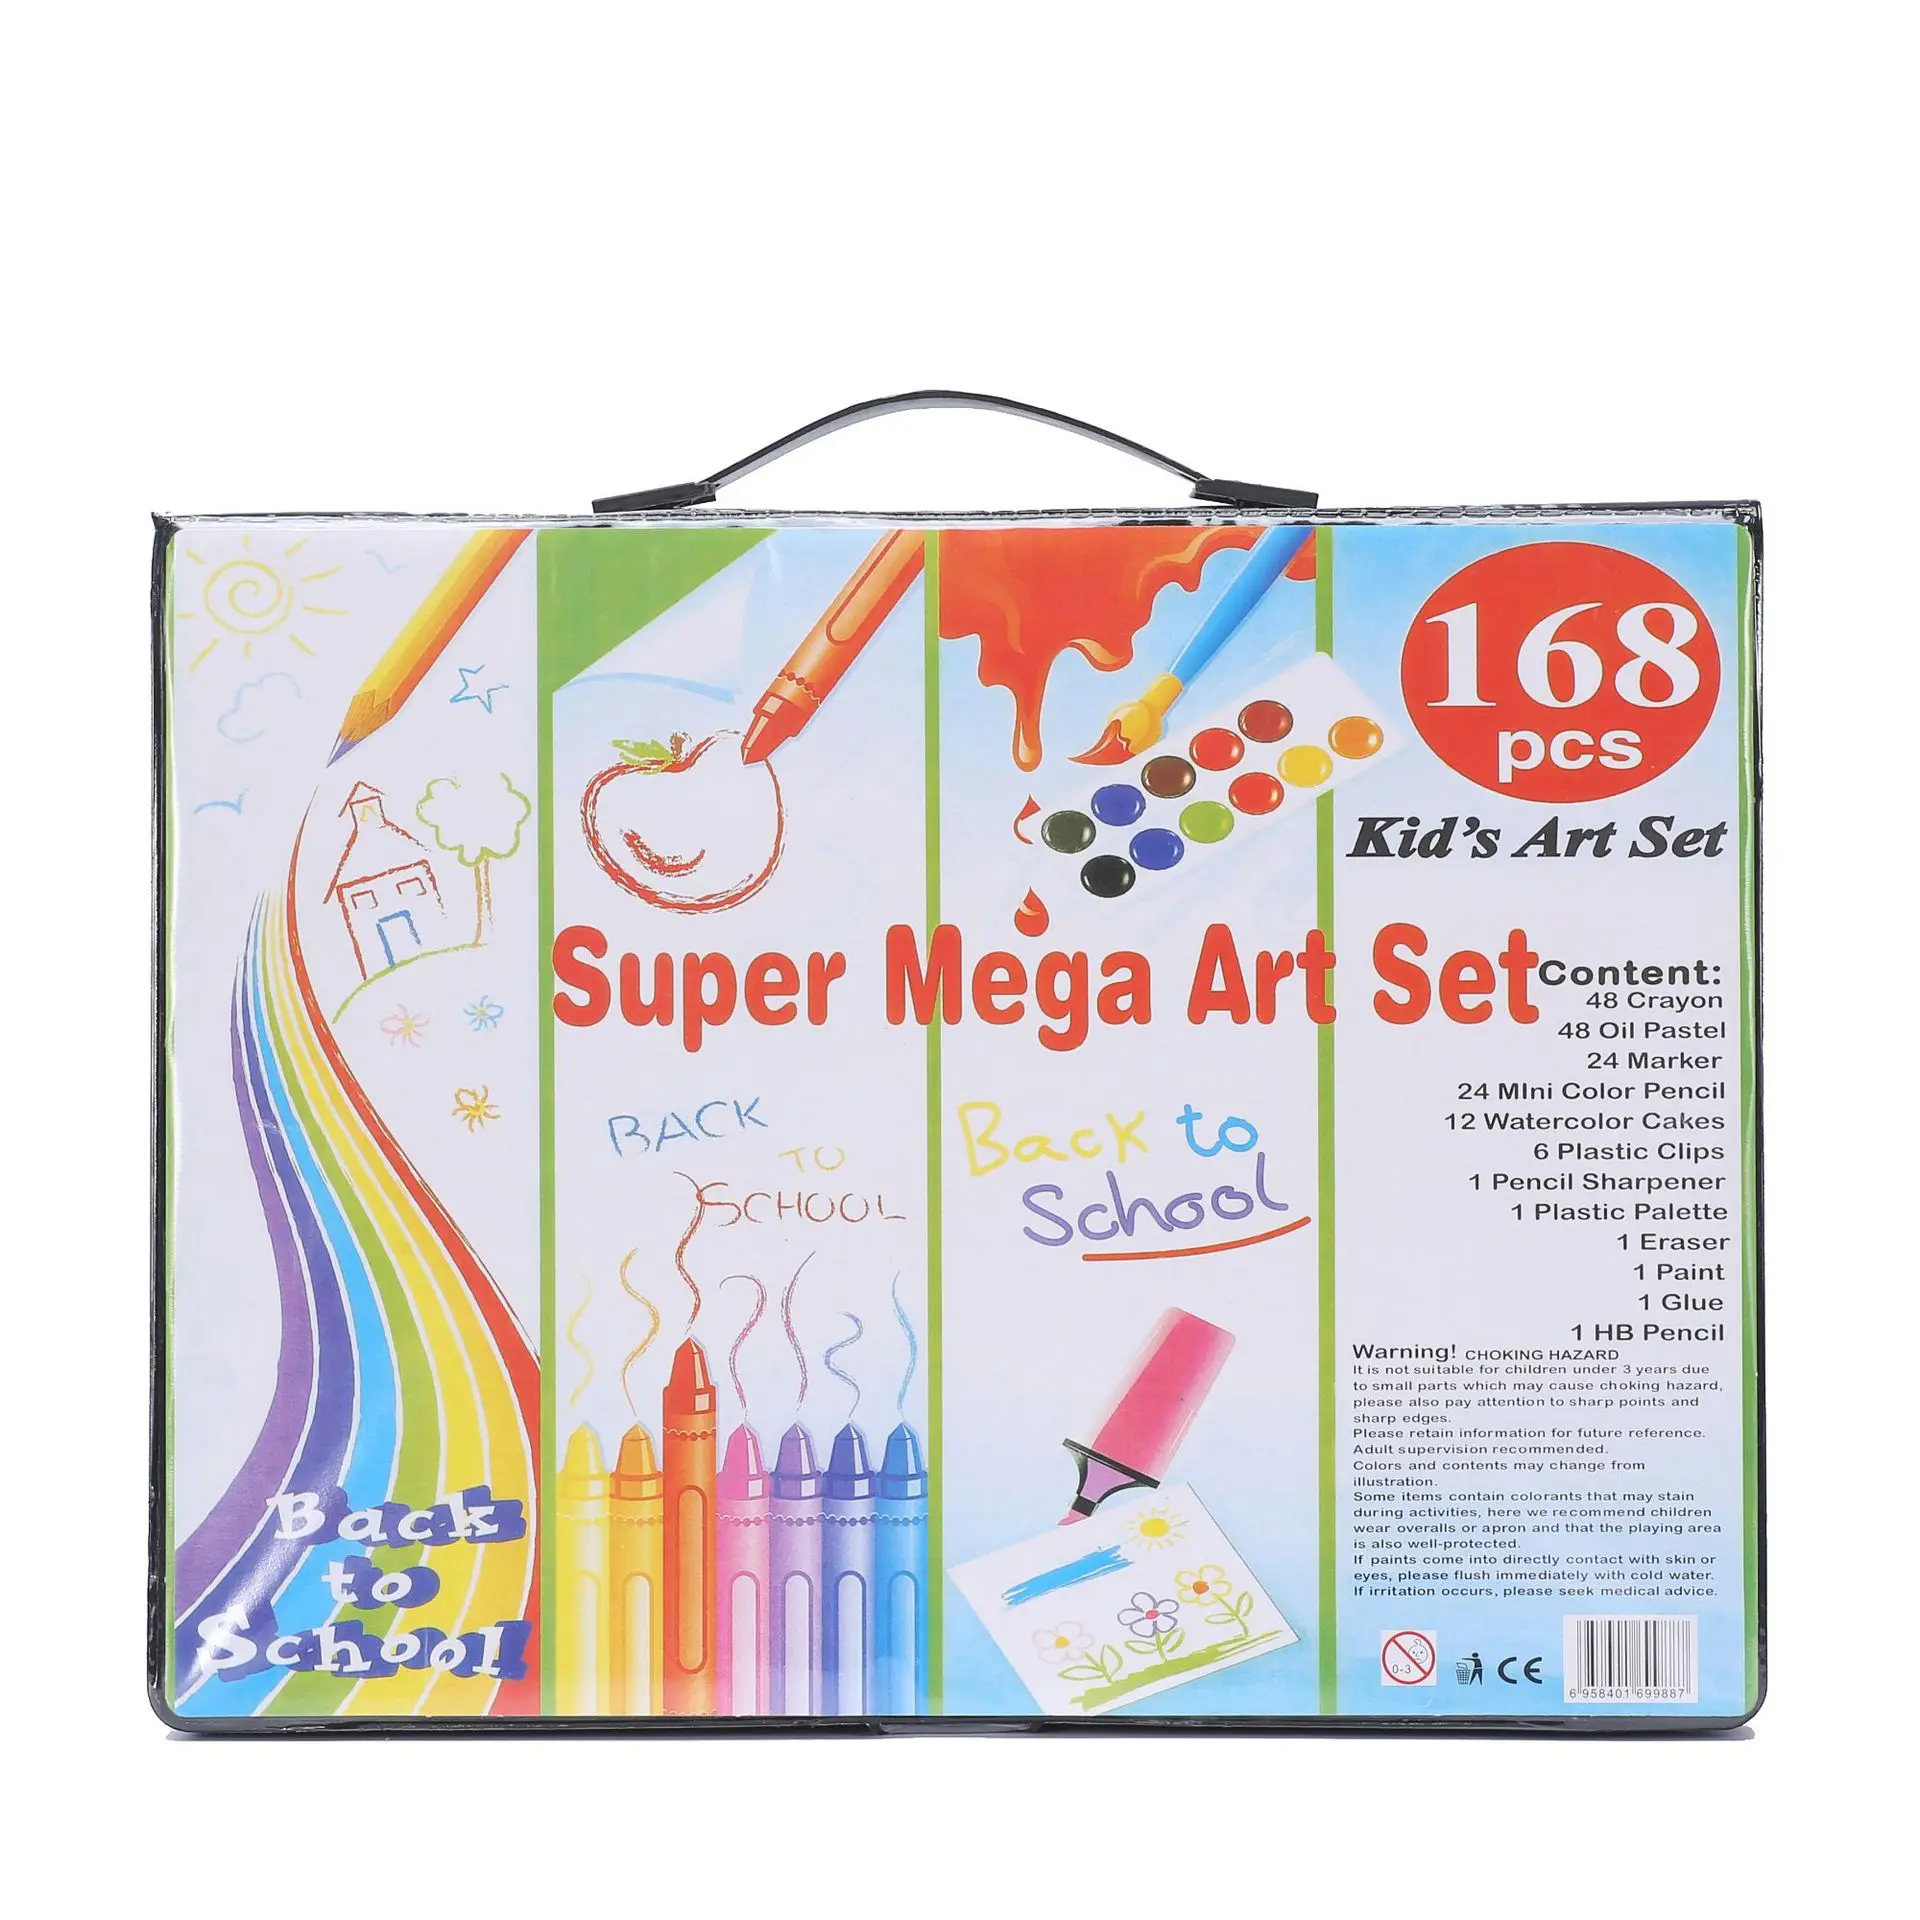 168 Adet Fırça Seti Çocuk Boyama Kırtasiye Suluboya Kalemler Boya Kalemi Renkli Kalemler Sanat Malzemeleri Çocuk Hediyeleri